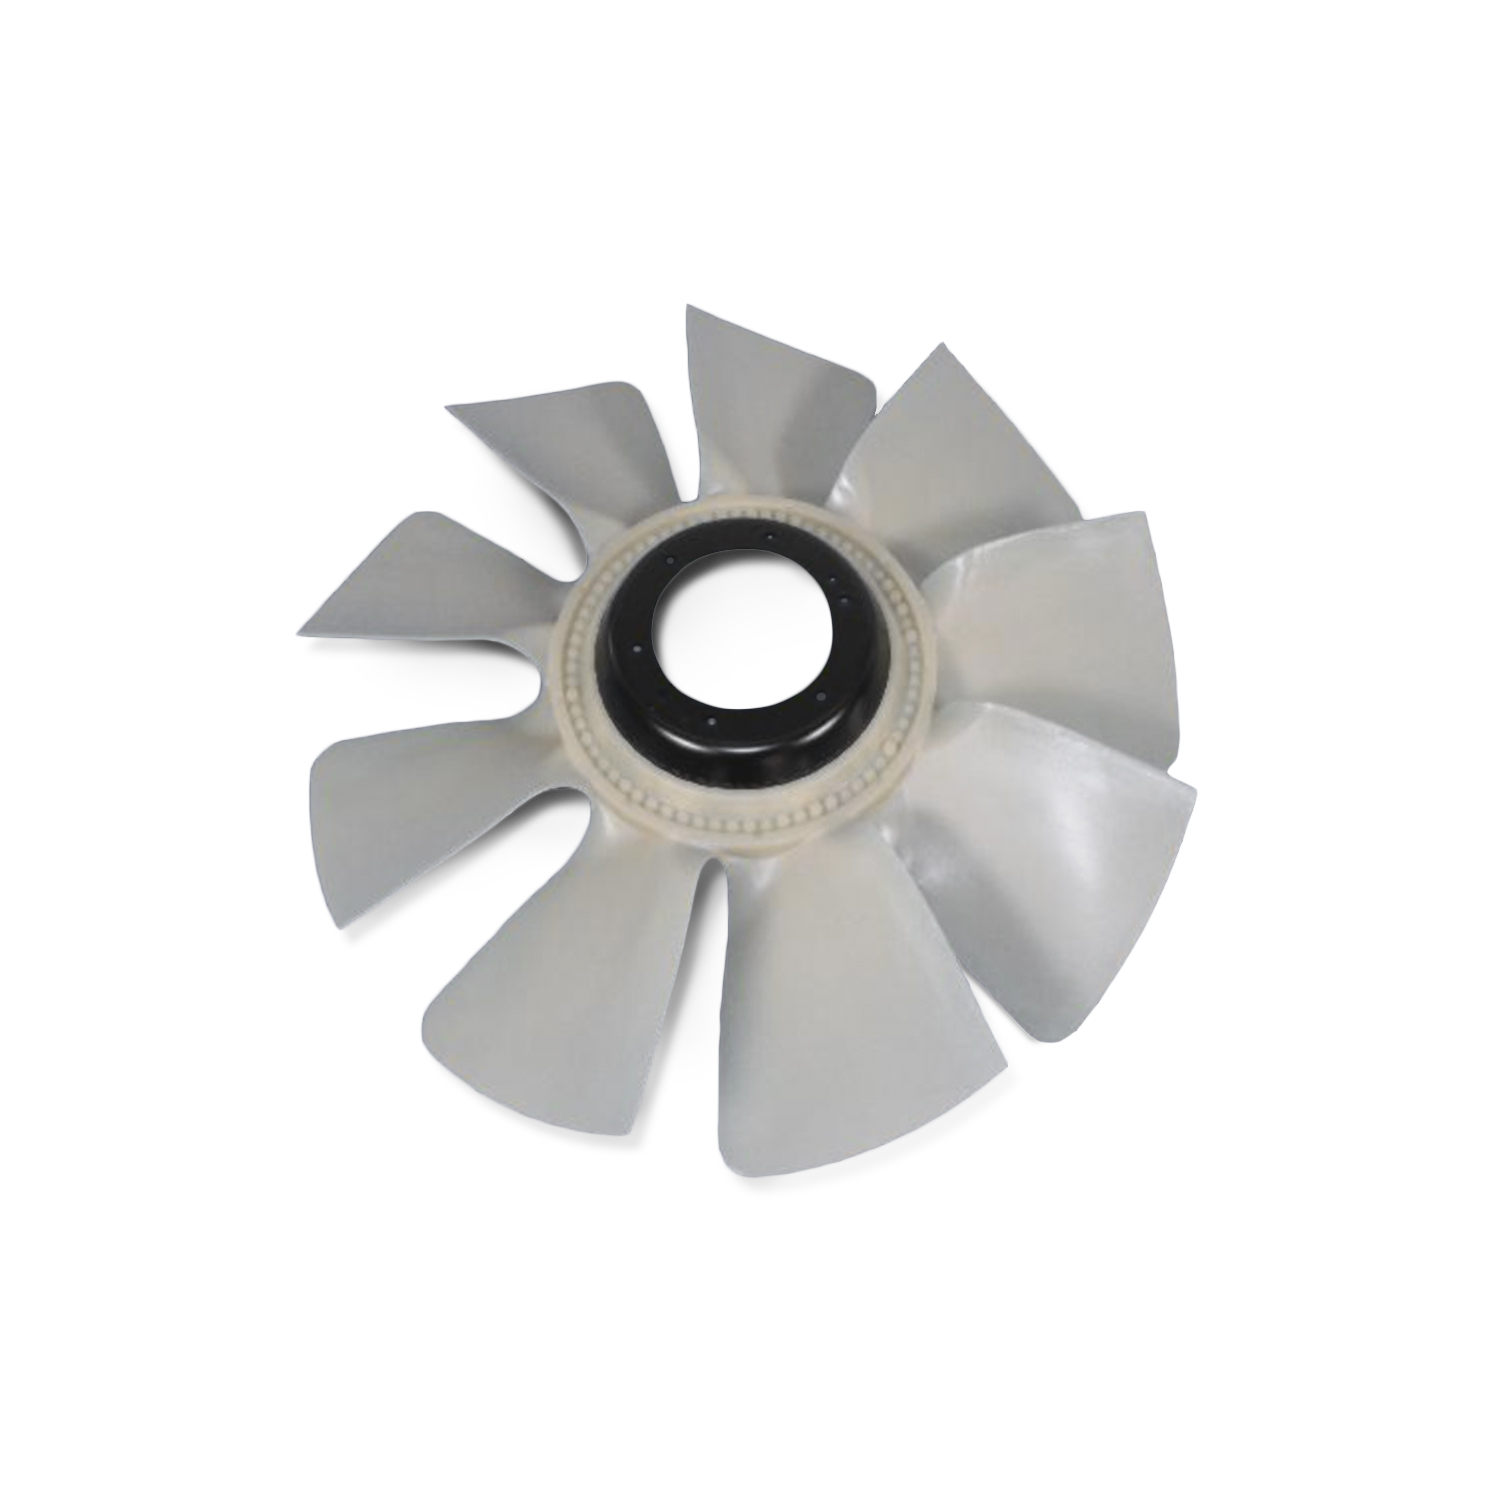 MOPAR PARTS - Engine Cooling Fan - MOP 52028878AB